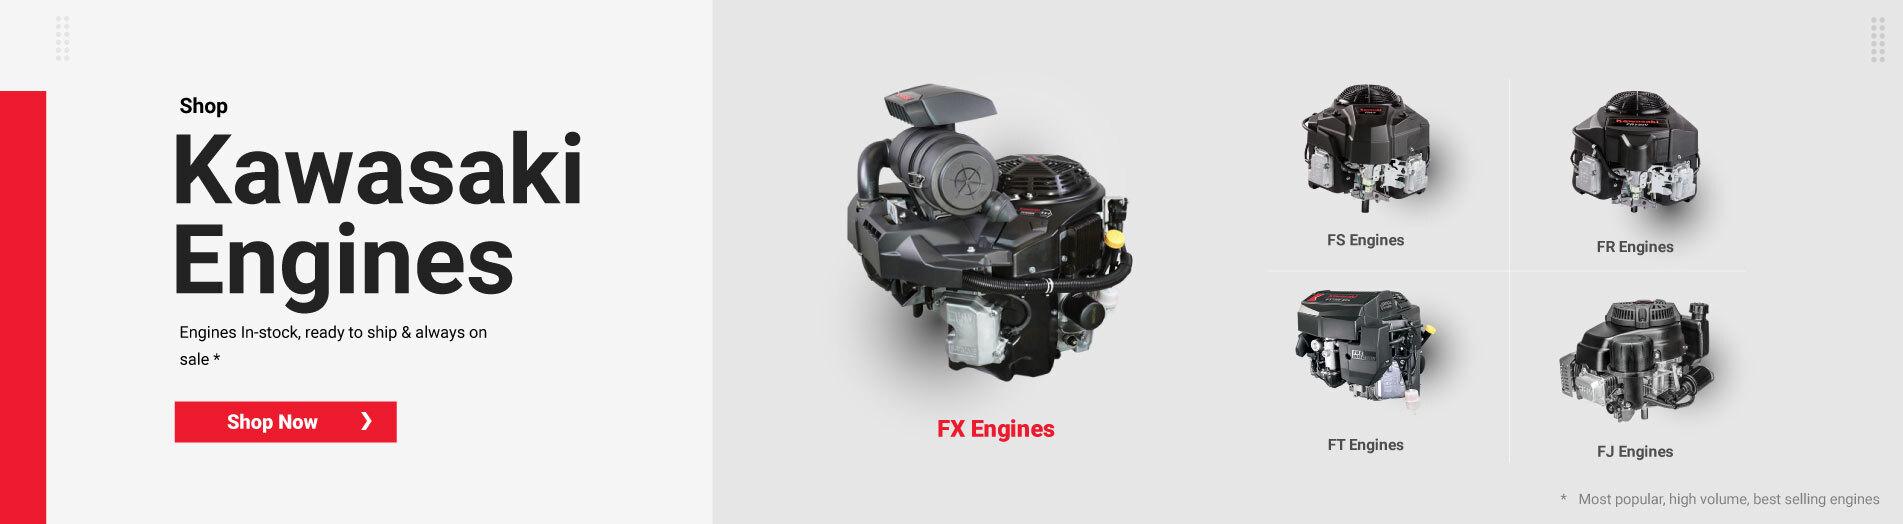 Shop Kawasaki Engines